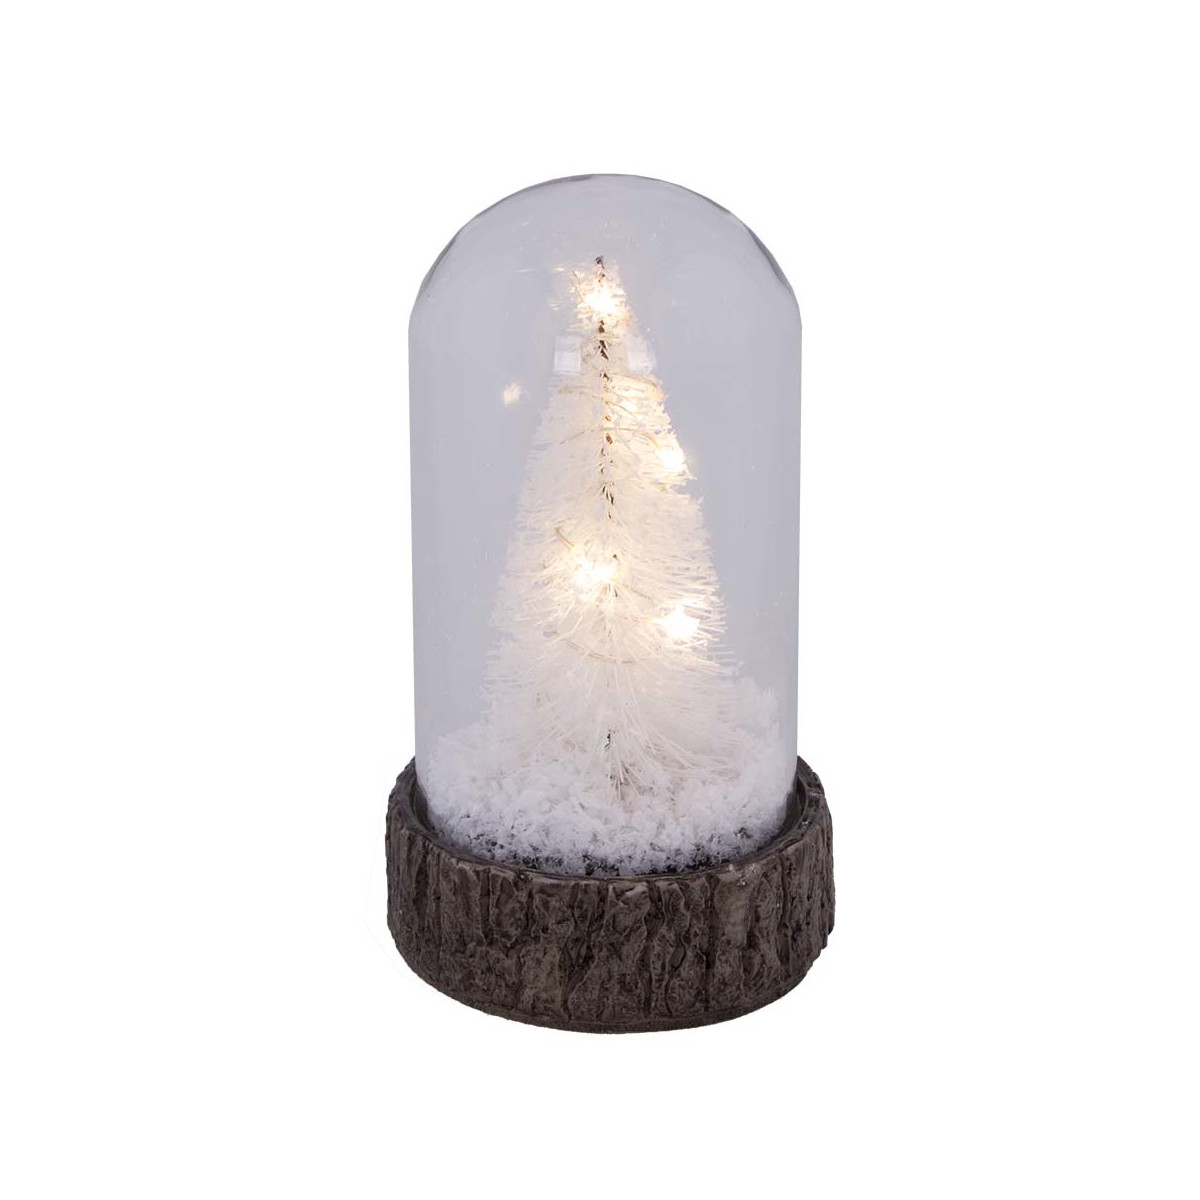 Glas Dome mit Baum und Schnee mit LED Beleuchtung